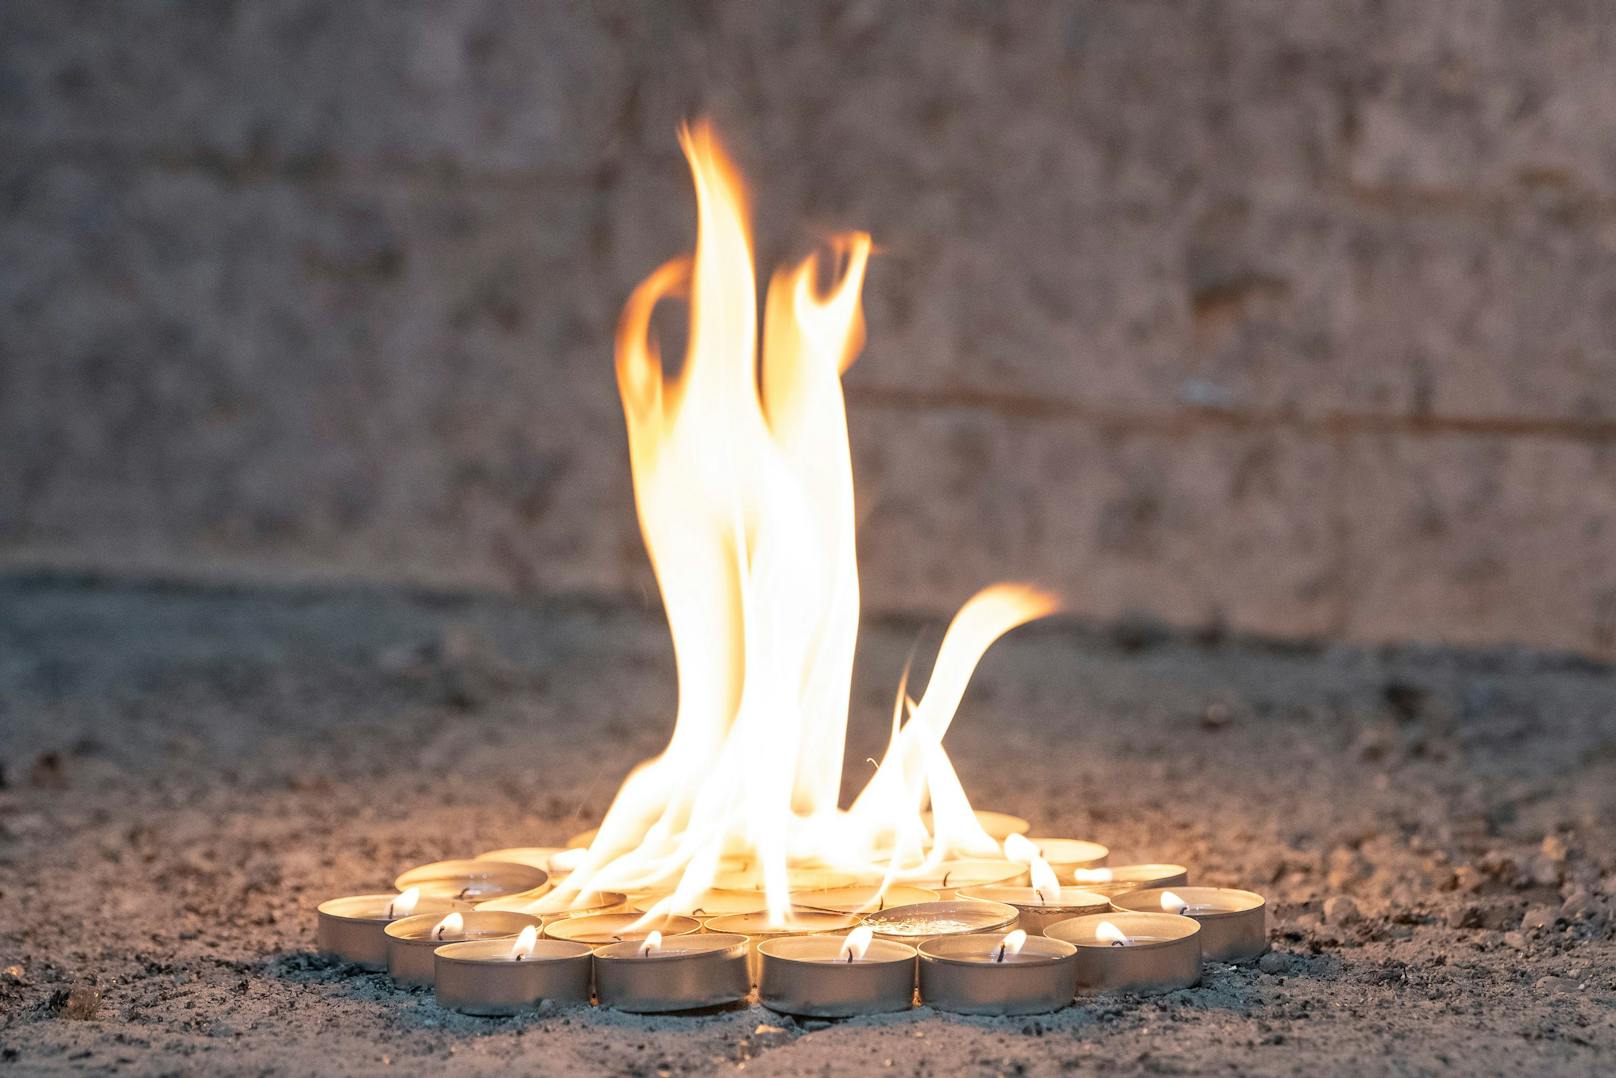 Der Grund: Stehen die Teelichter zu nahe, kann das Wachs in der Hitze zu brennen beginnen. Aus den kleinen Flammen wird ein riesiges Feuer.